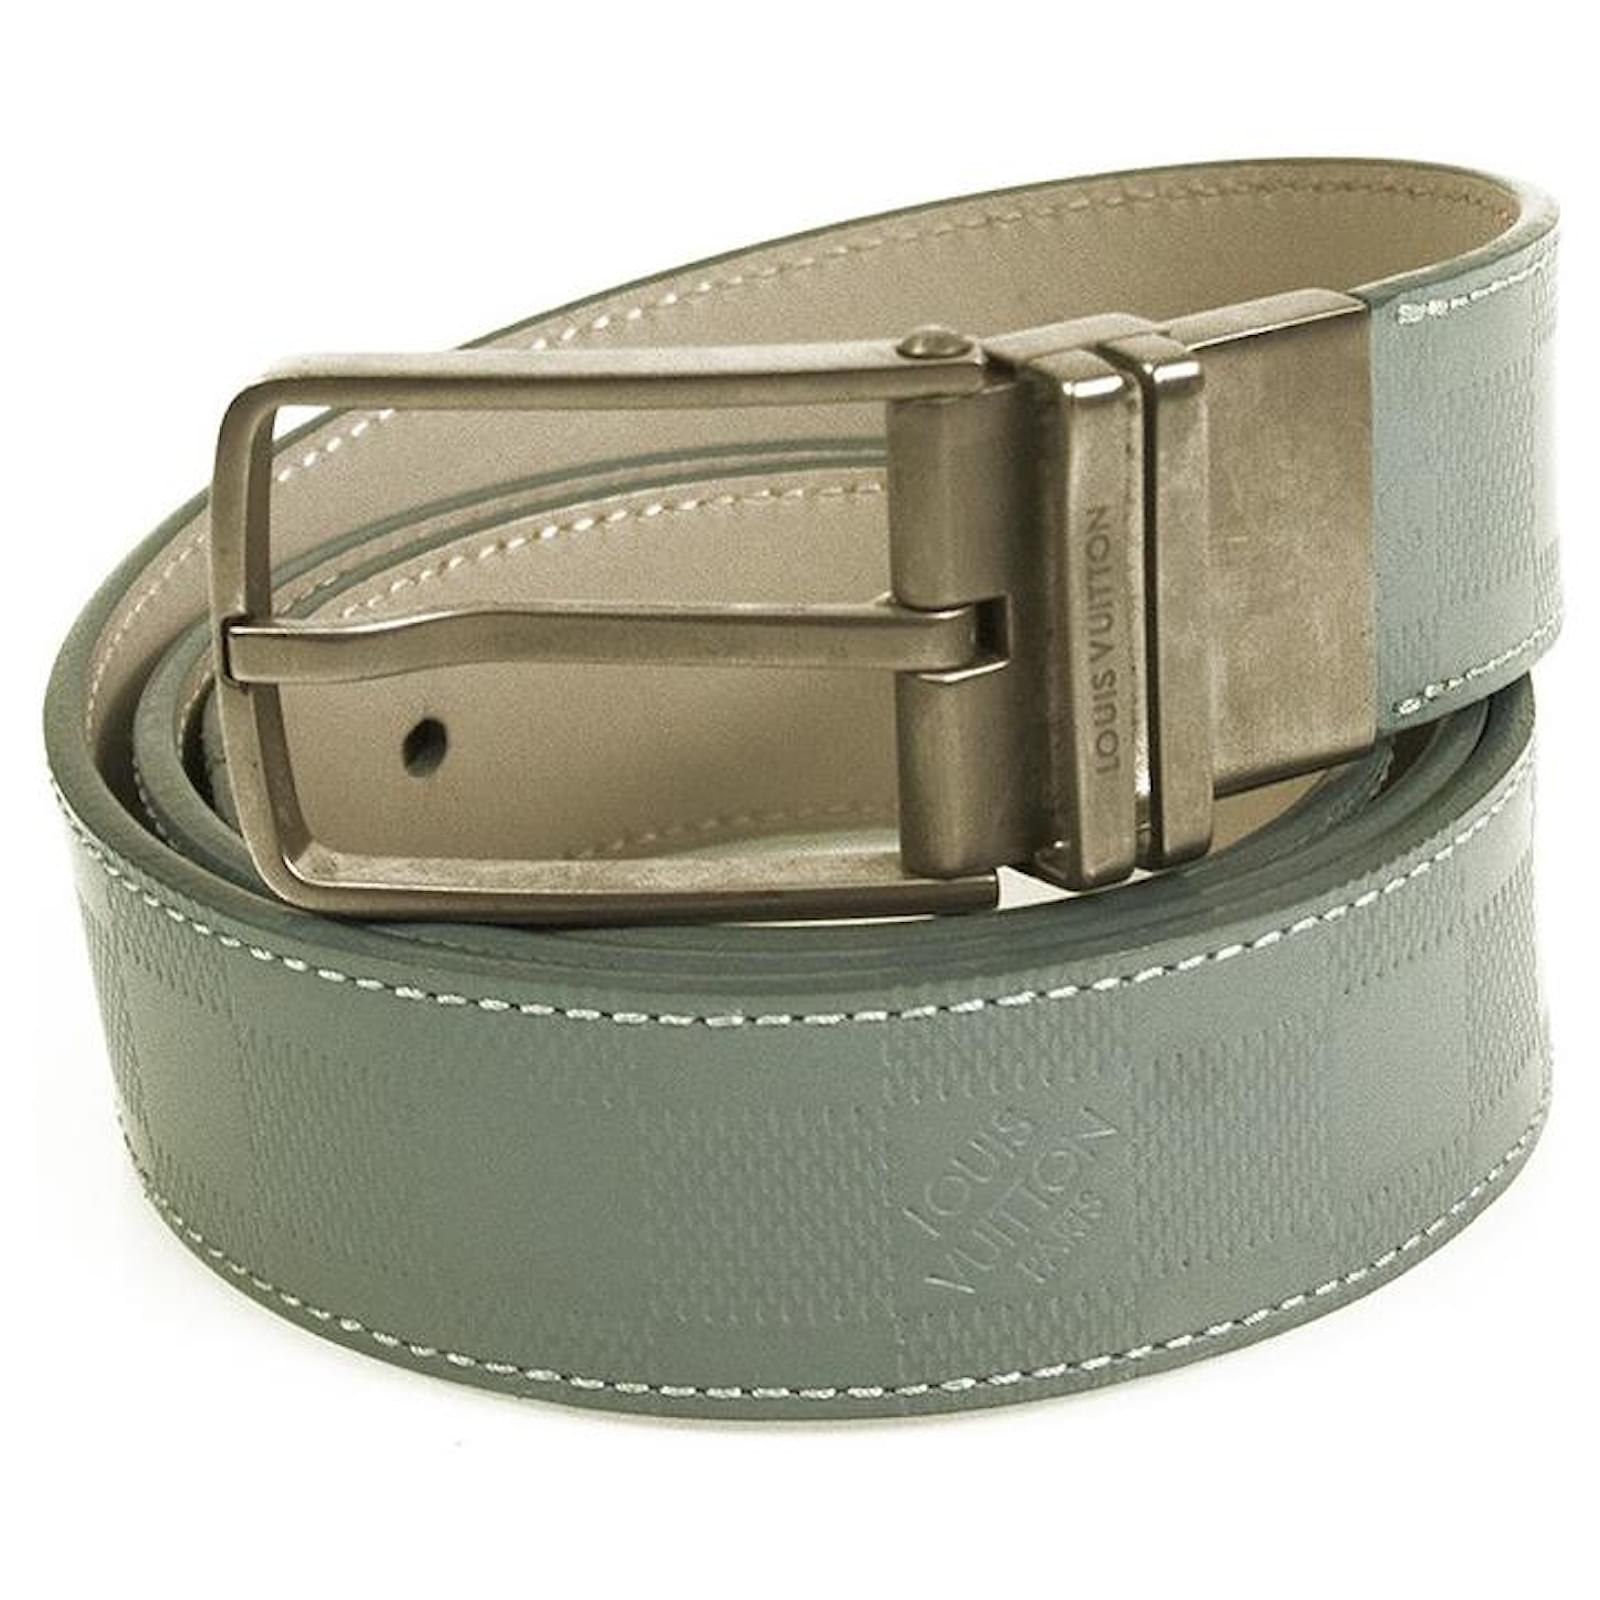 Cinturon Cinto Importado Louis Vuitton Largo total: 110 cm Ancho